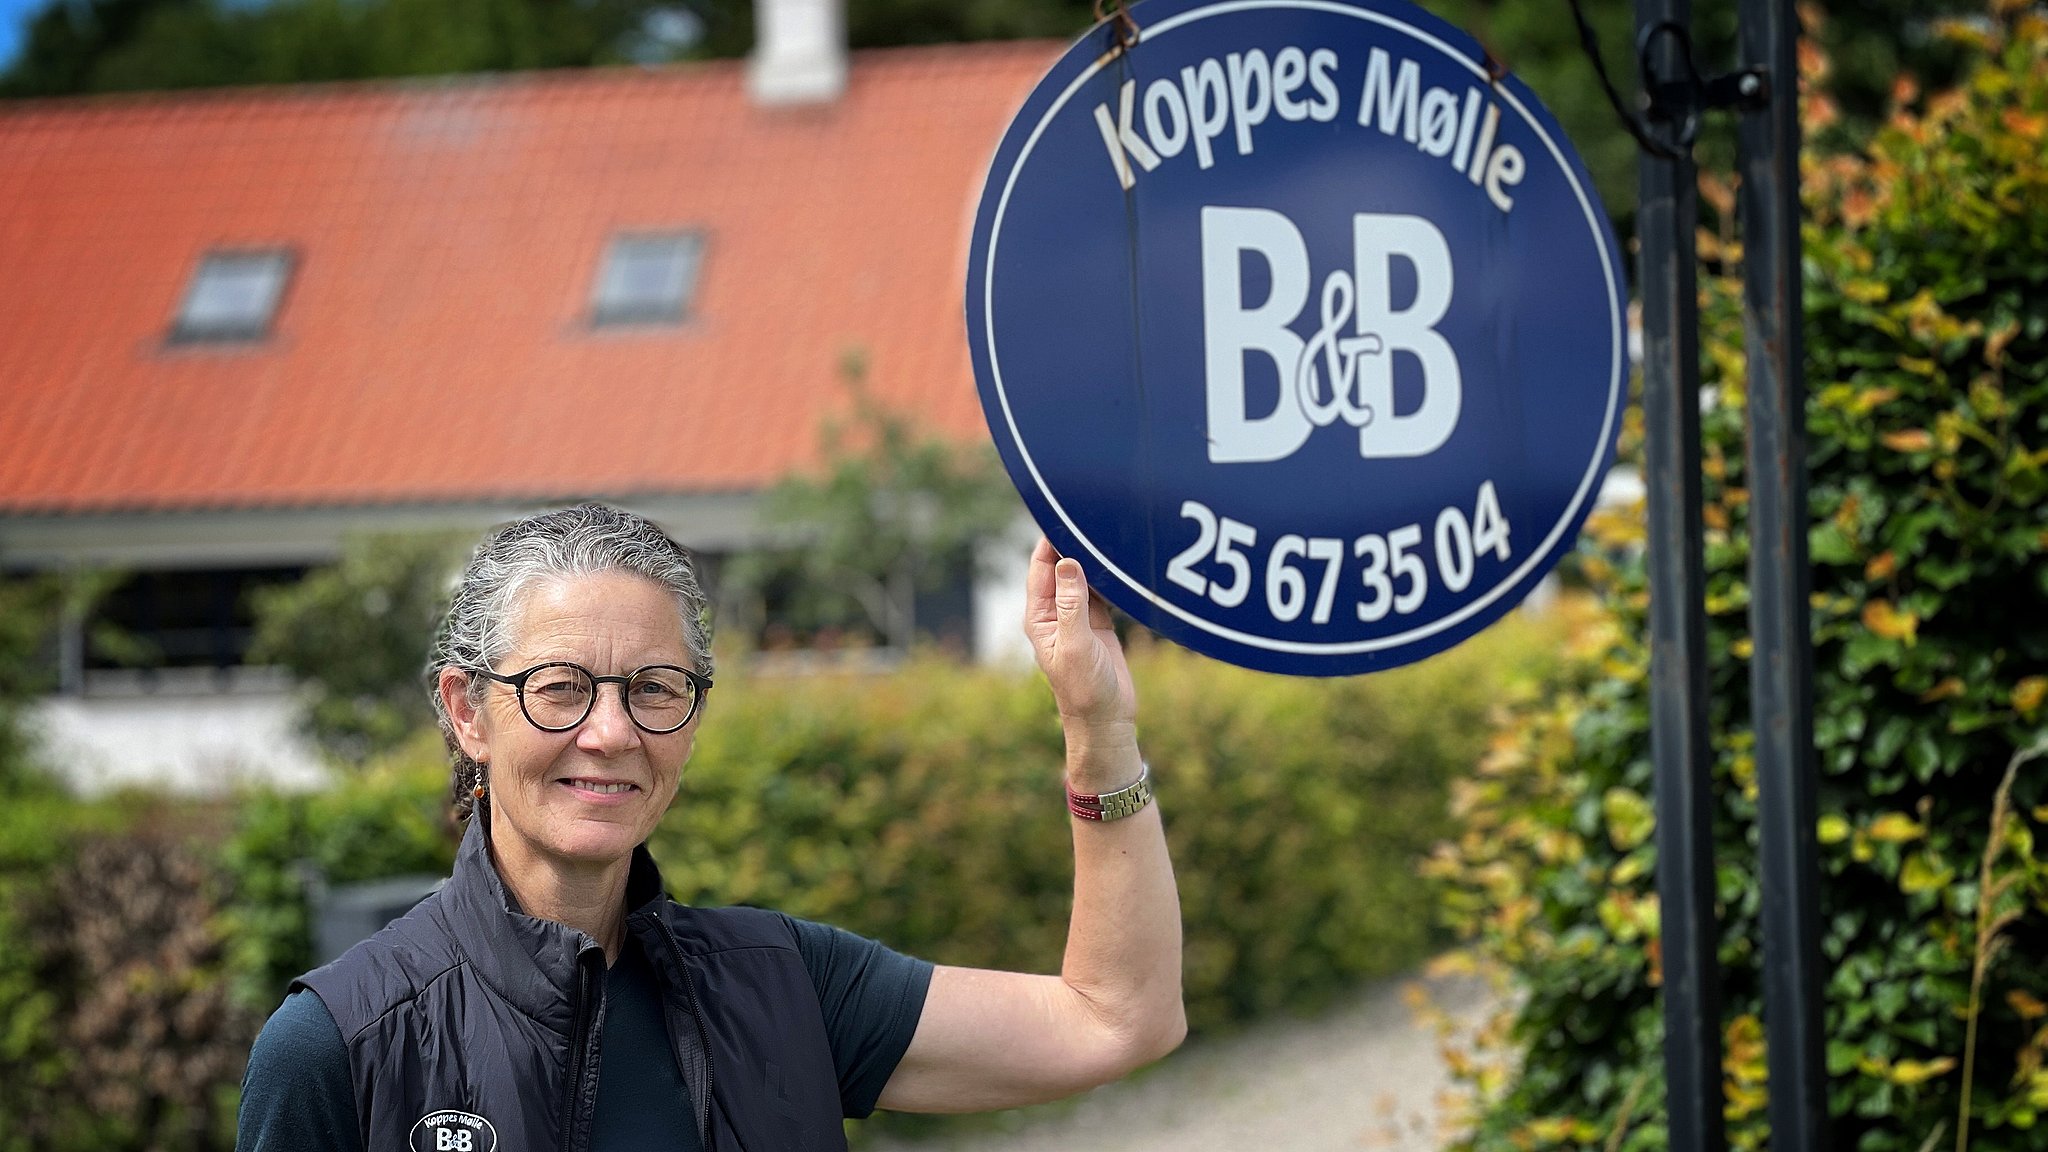 Karen Hald, Koppes Mølle B&B